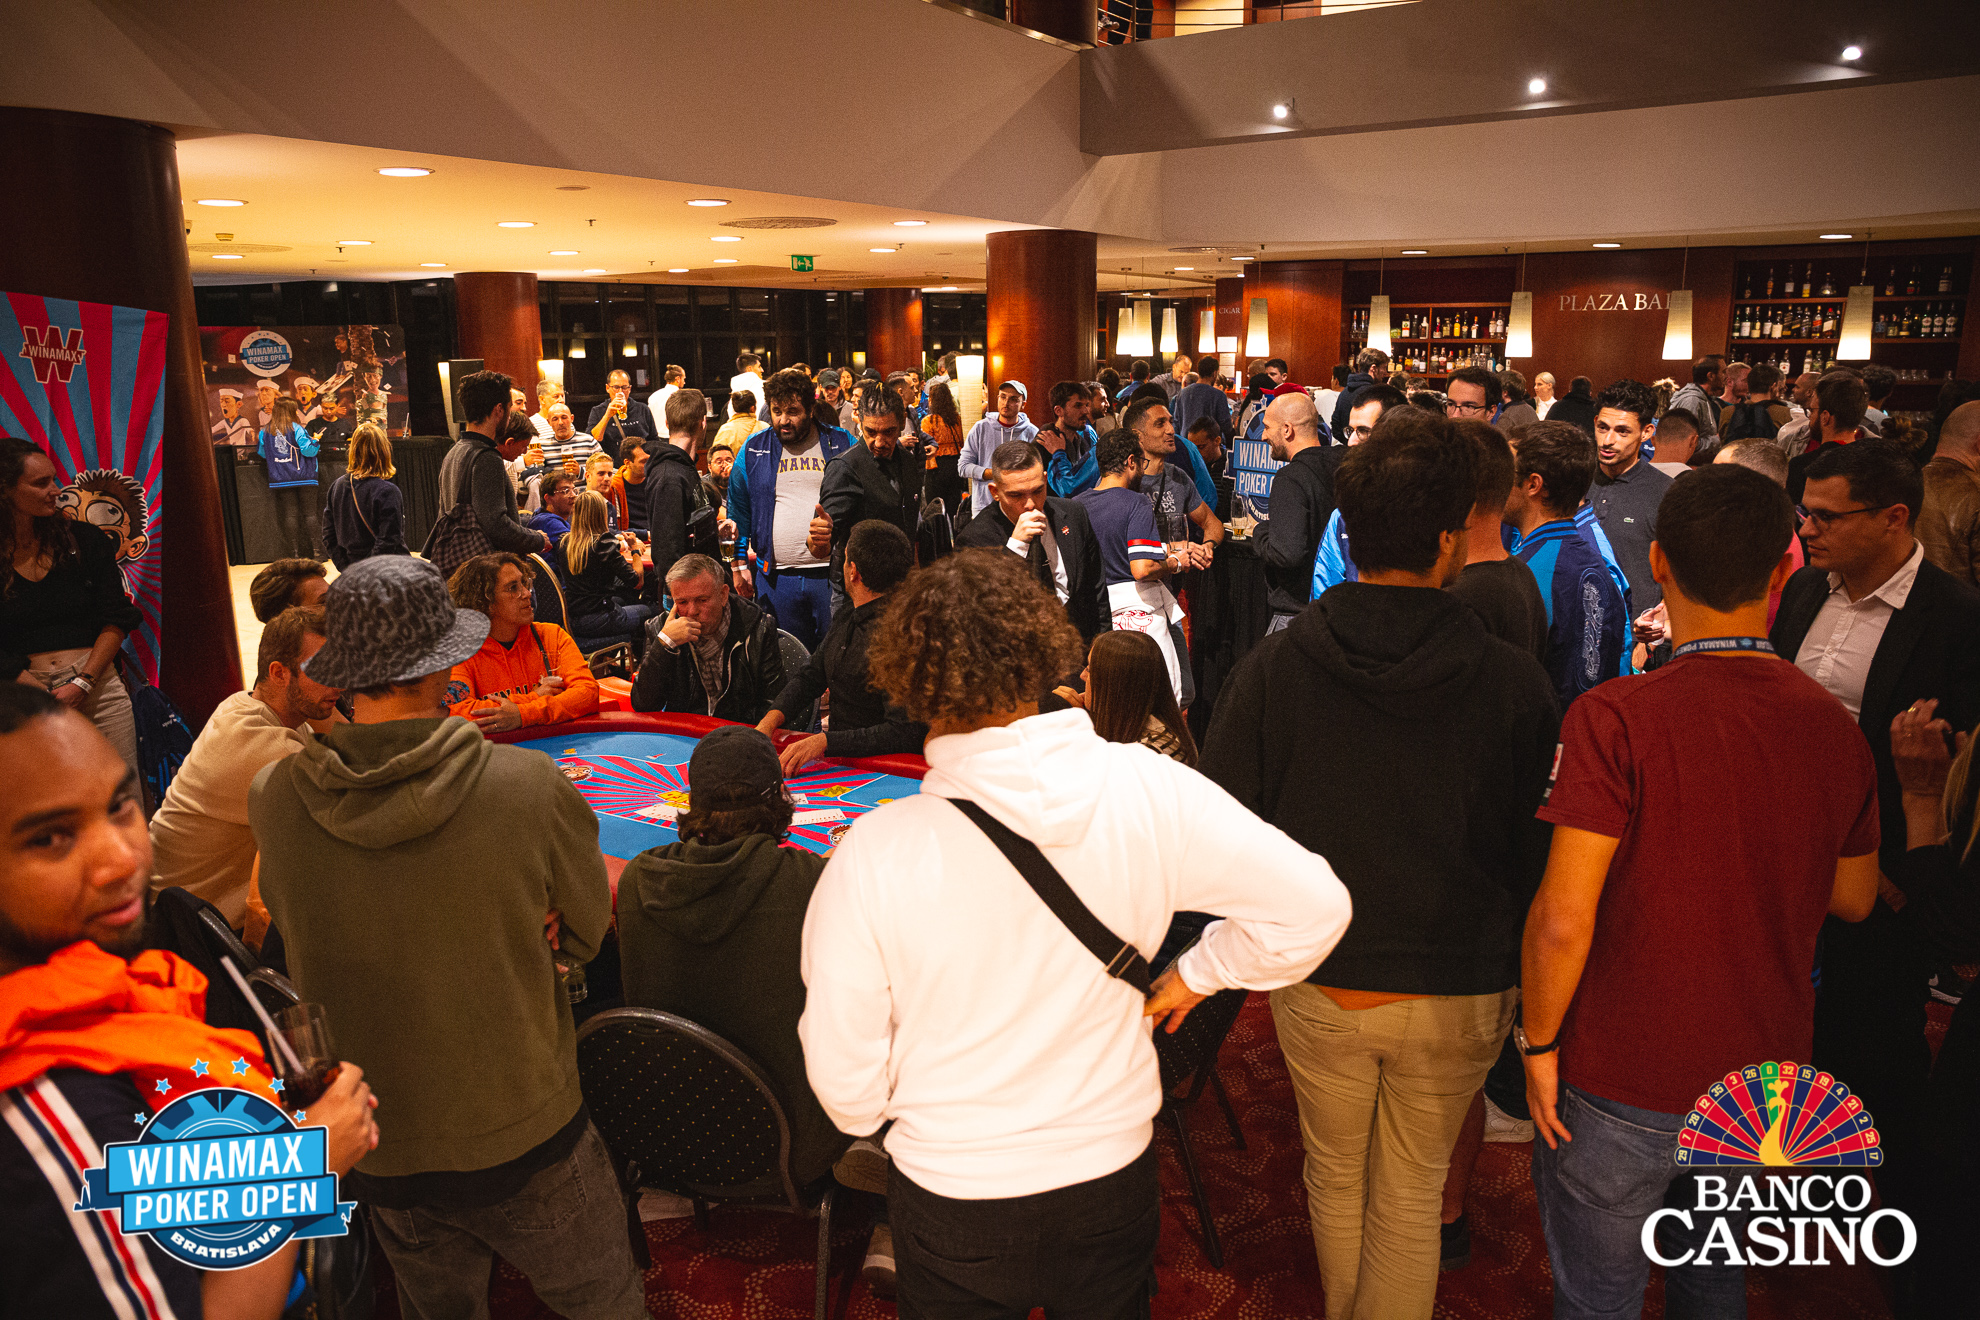 Ein Fest des Pokerspiels - die Winamax Poker Open im Banco Casino! Das Main Event beginnt heute!